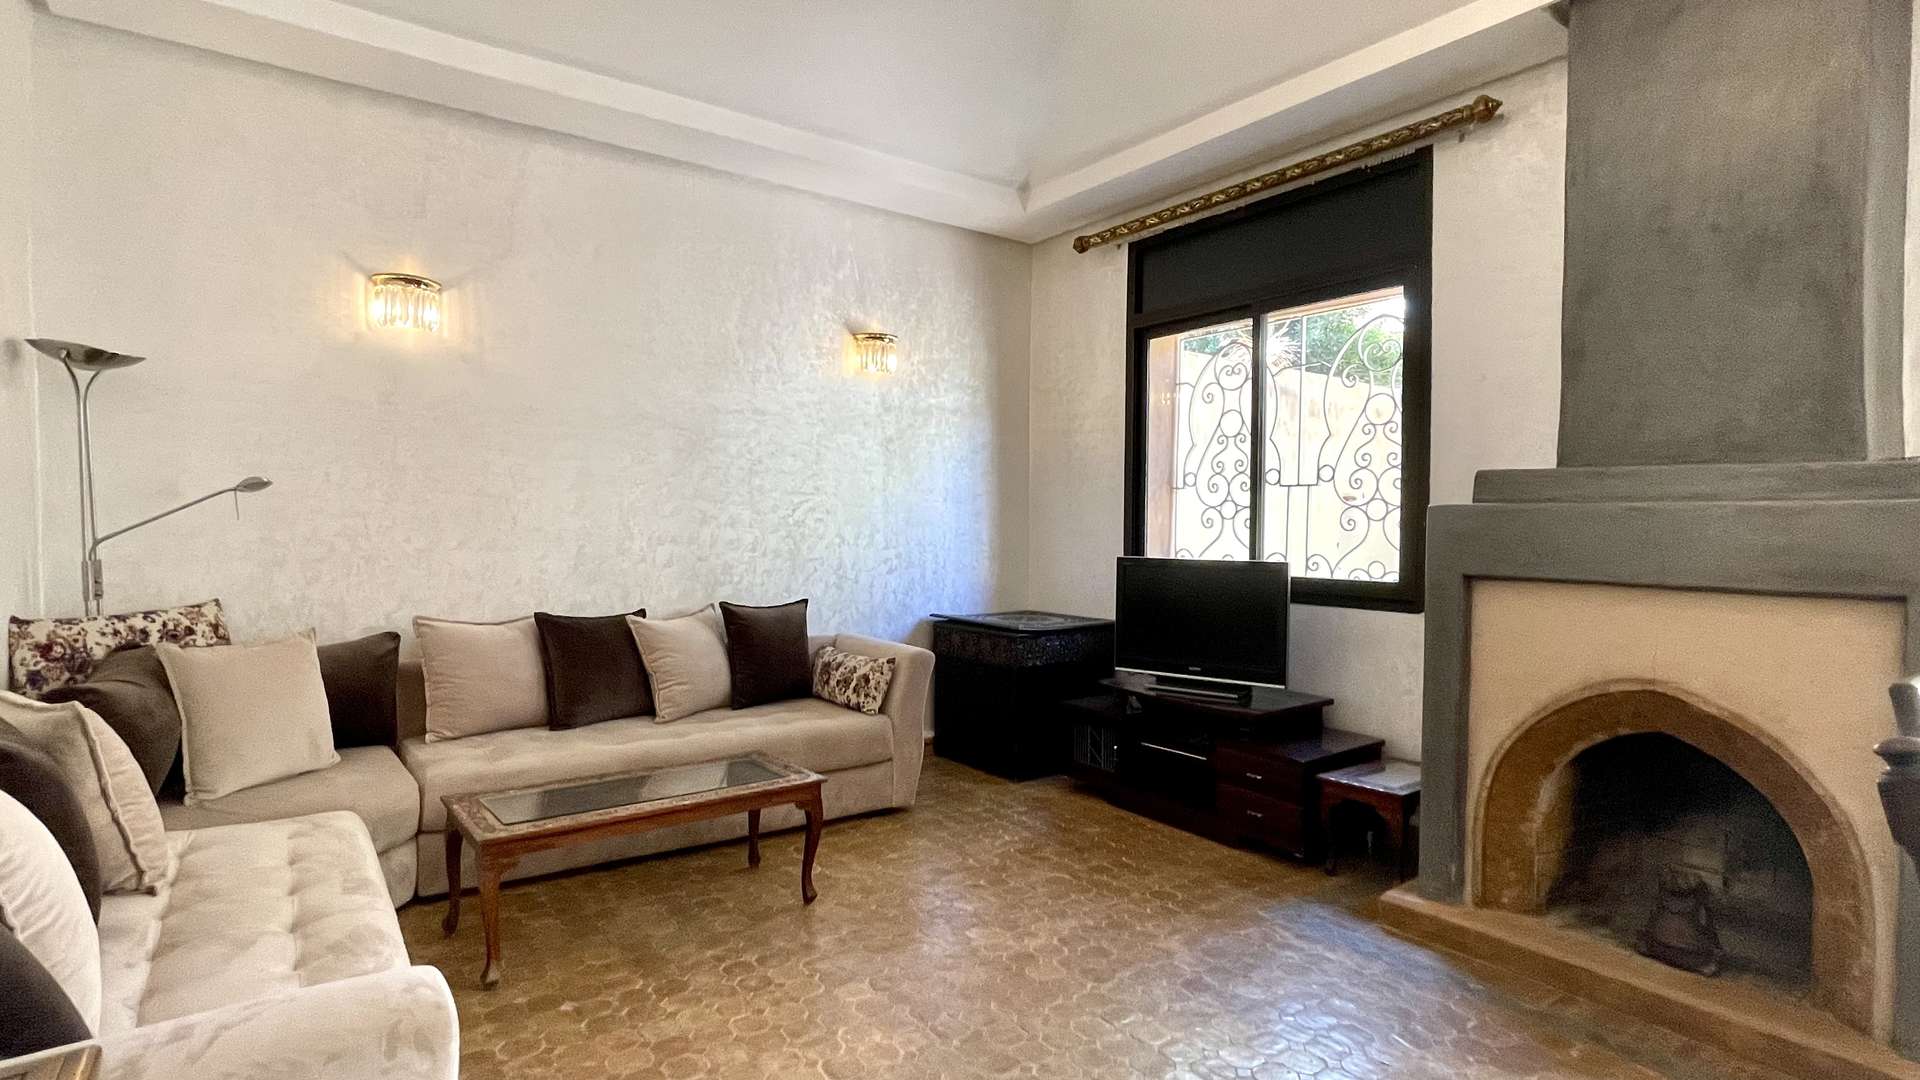 Vente,Villa,Villa 3ch dans une résidence sécurisée à proximité de Carrefour Targa,Marrakech,Targa